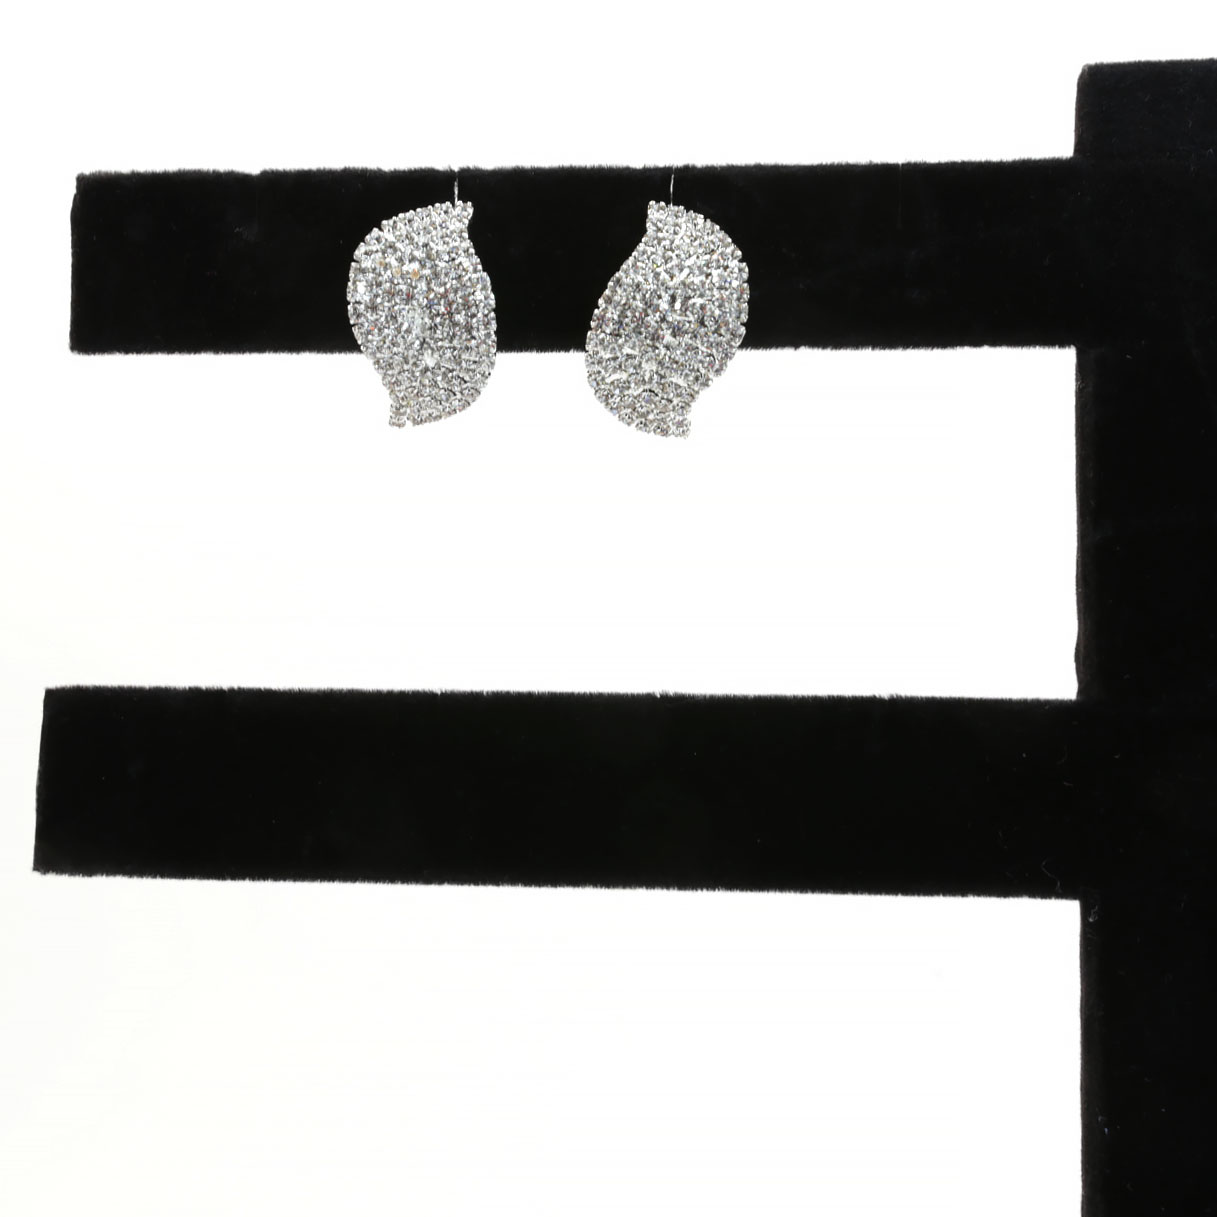 Crystal silver earrings